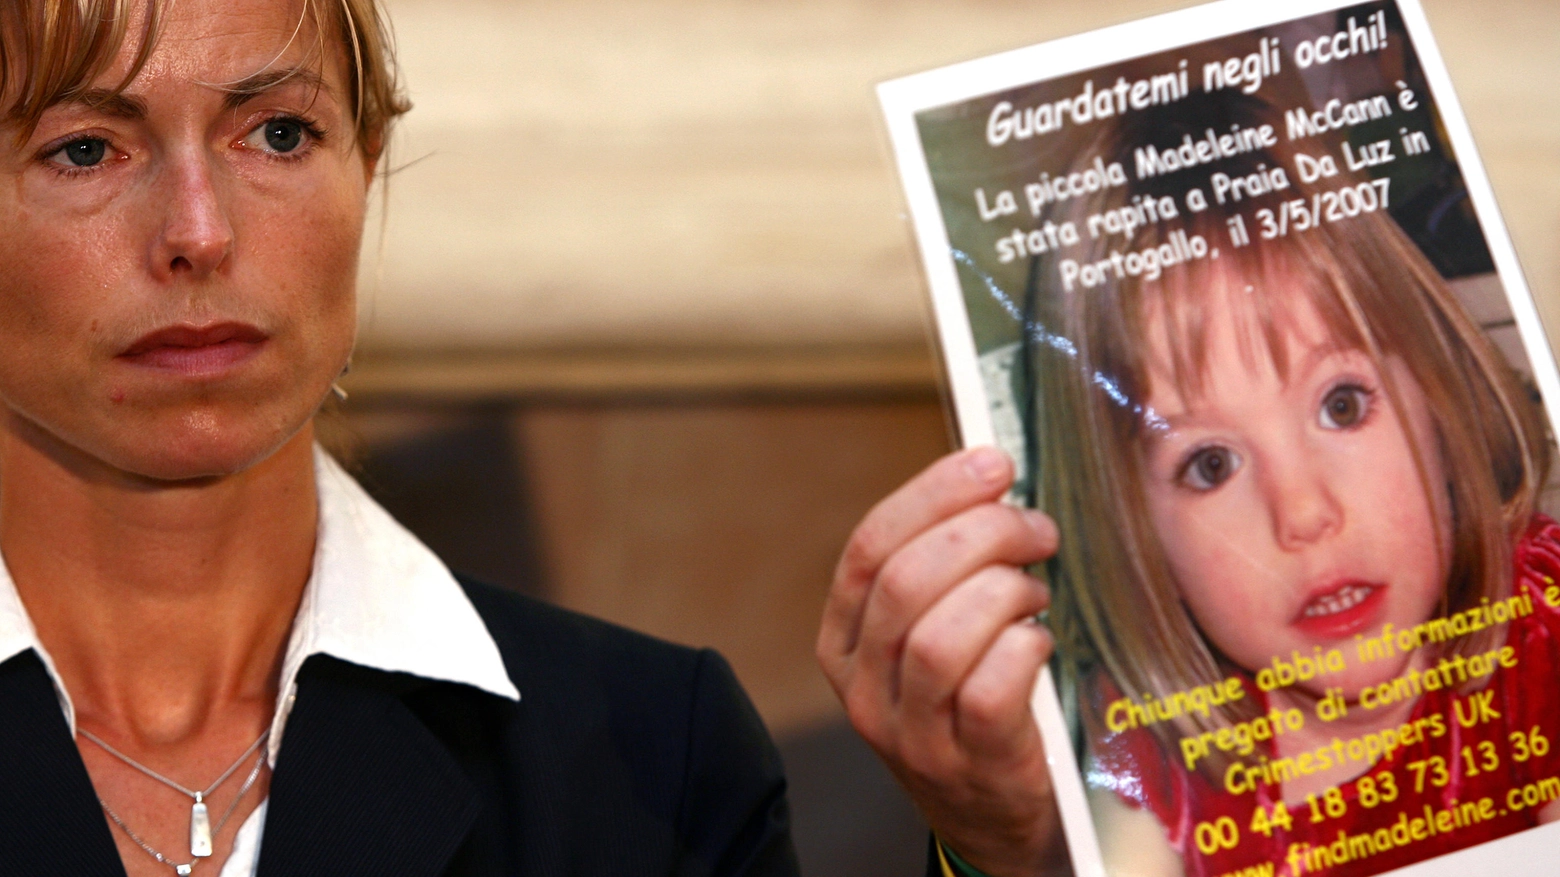 Maddie McCann, la bimba britannica scomparsa nel 2007